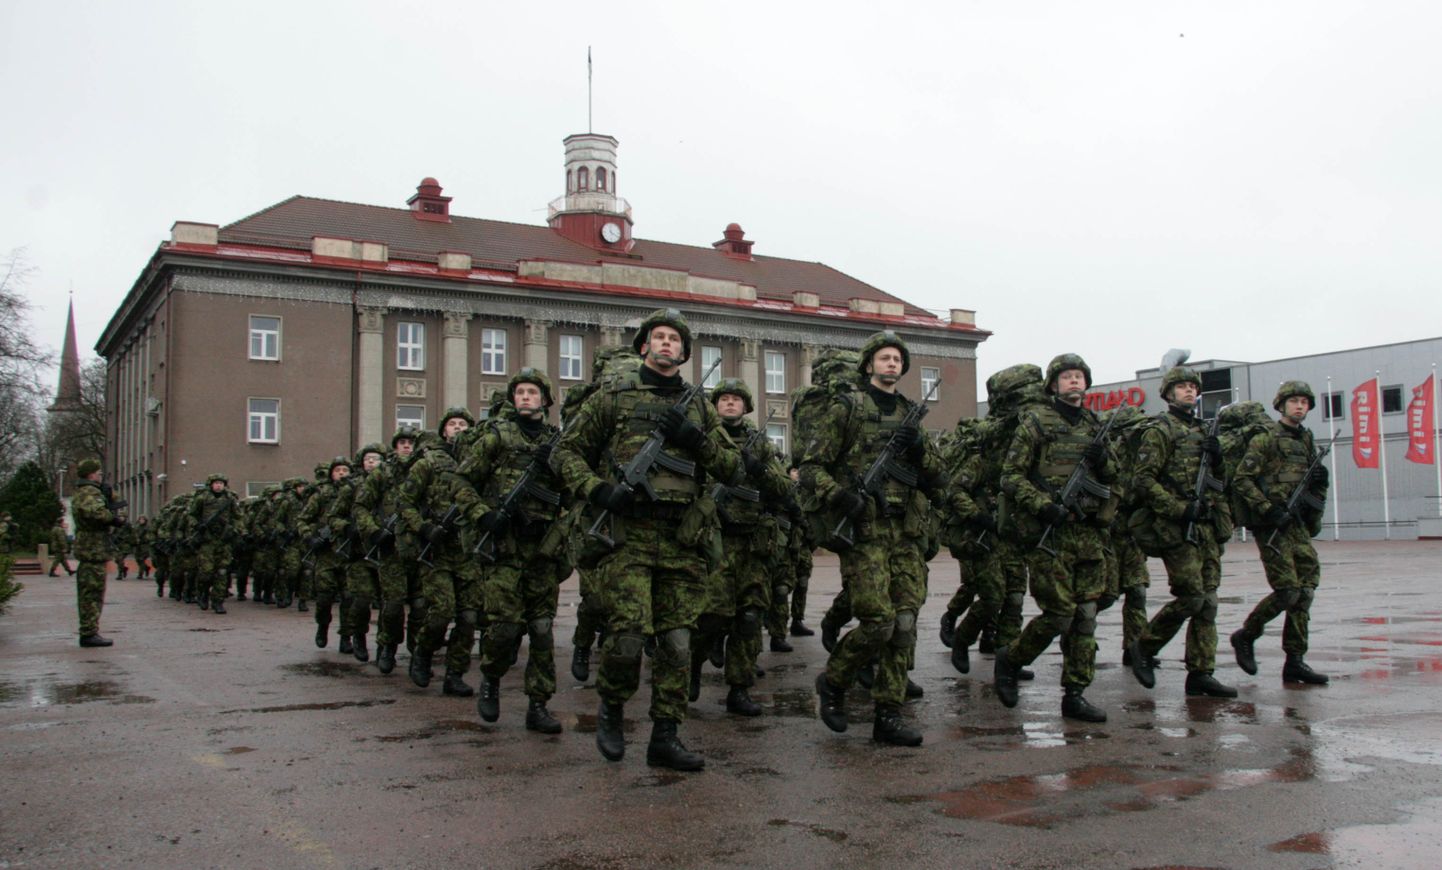 Sel pildil marsivad Viru pataljoni kaitseväelased Jõhvi keskväljakul väeosa 98. sünnipäeval 2015. aastal. PEETER LILLEVÄLI